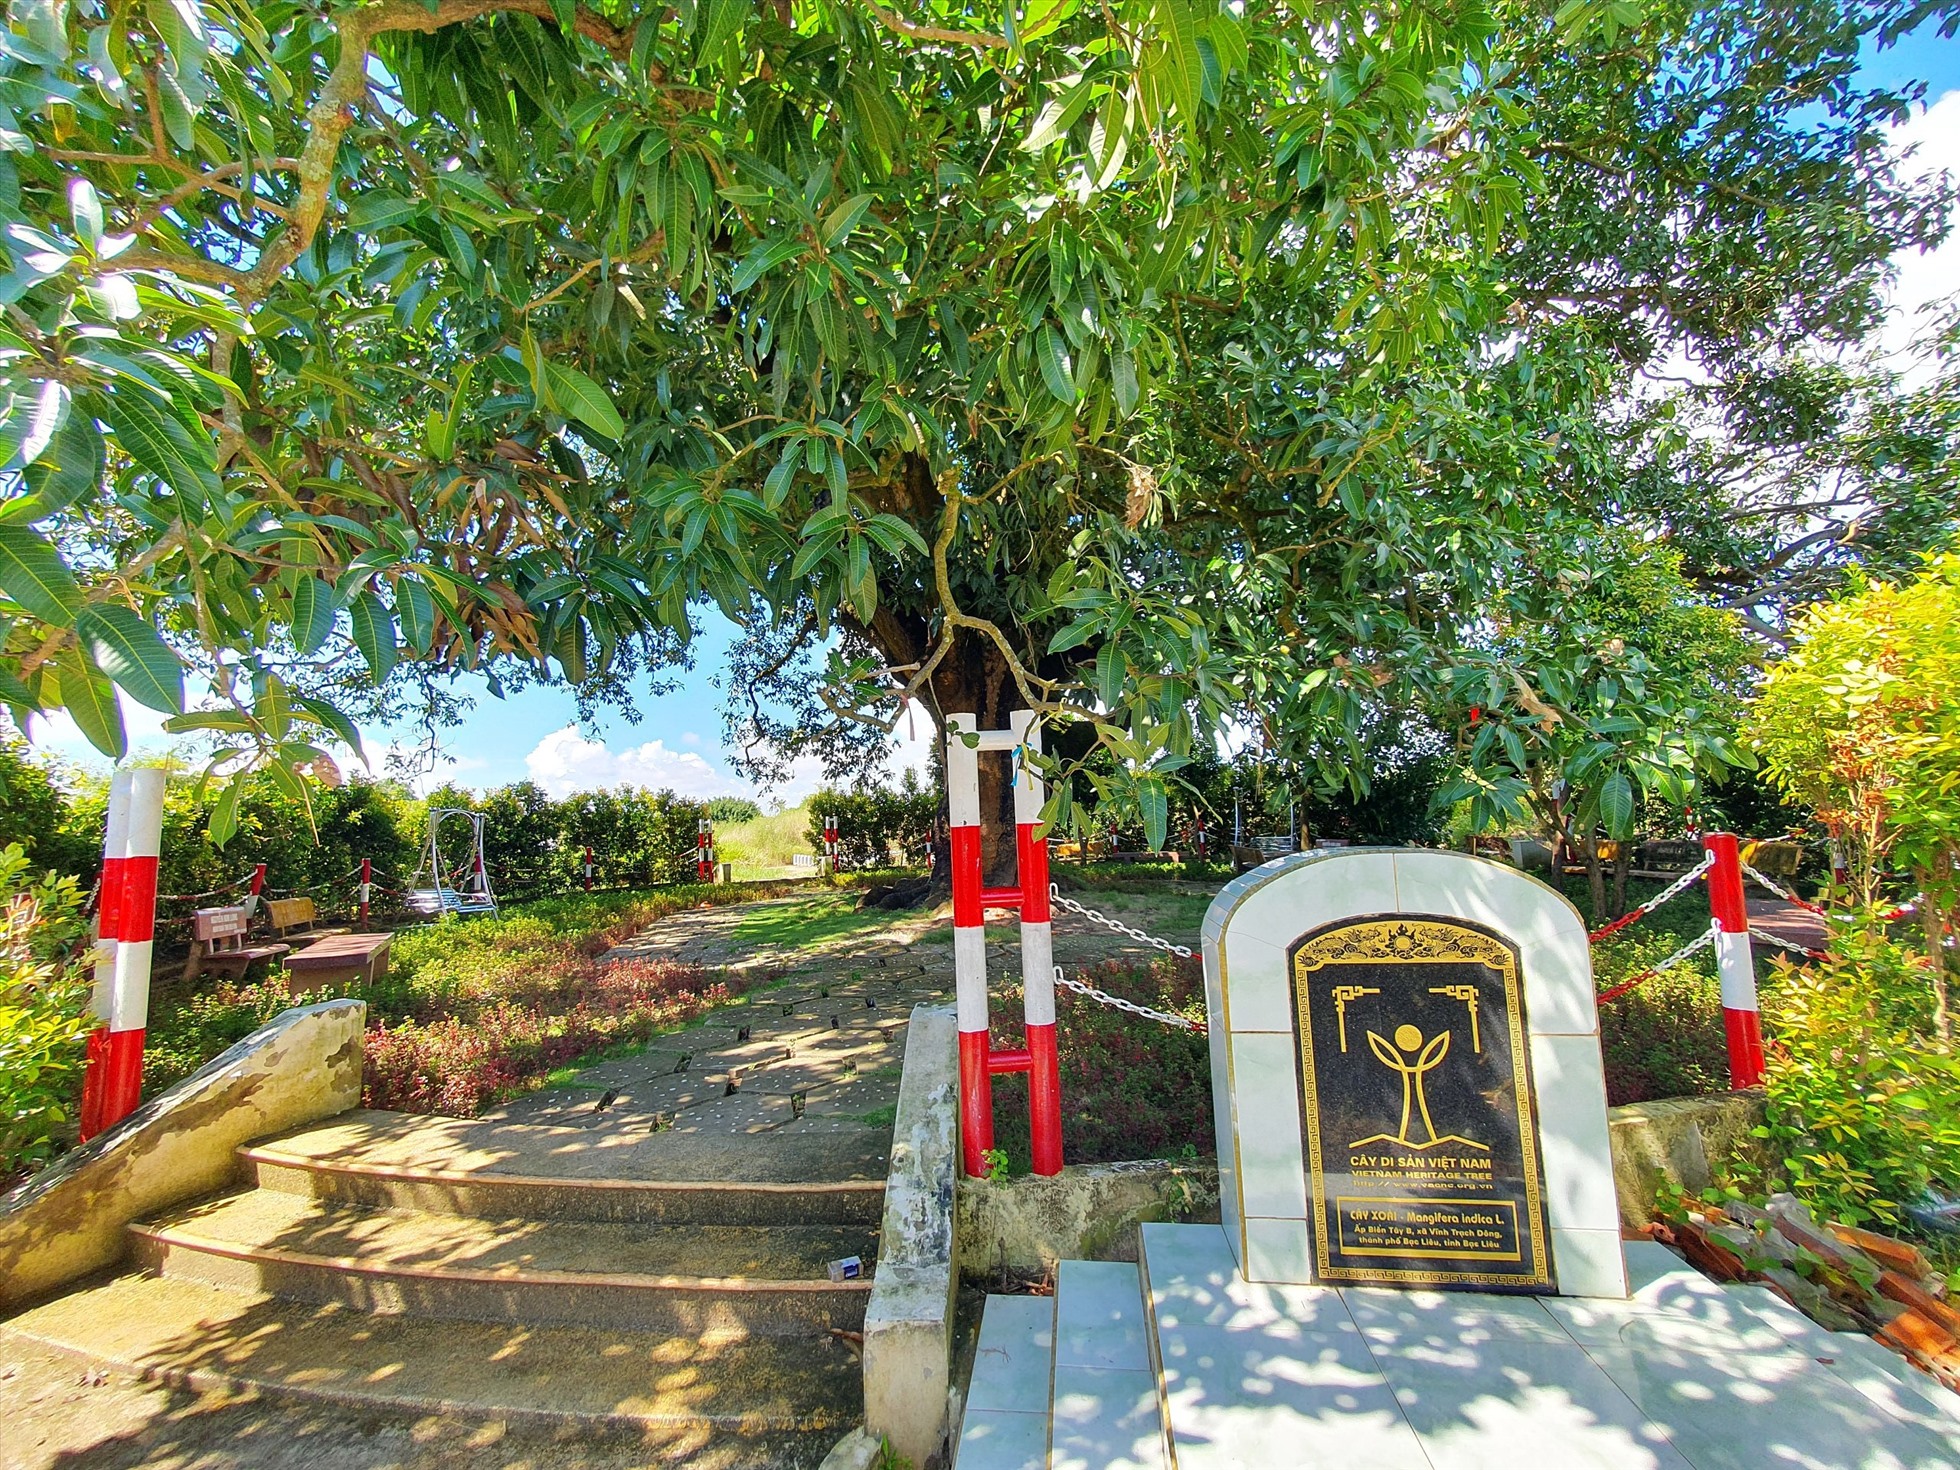 Ở Bạc Liêu có cây xoài cổ thụ hơn 340 năm tuổi lớn nhất vùng ĐBSCL vẫn sai trái, mỗi vụ thu hàng trăm kg - Ảnh 10.